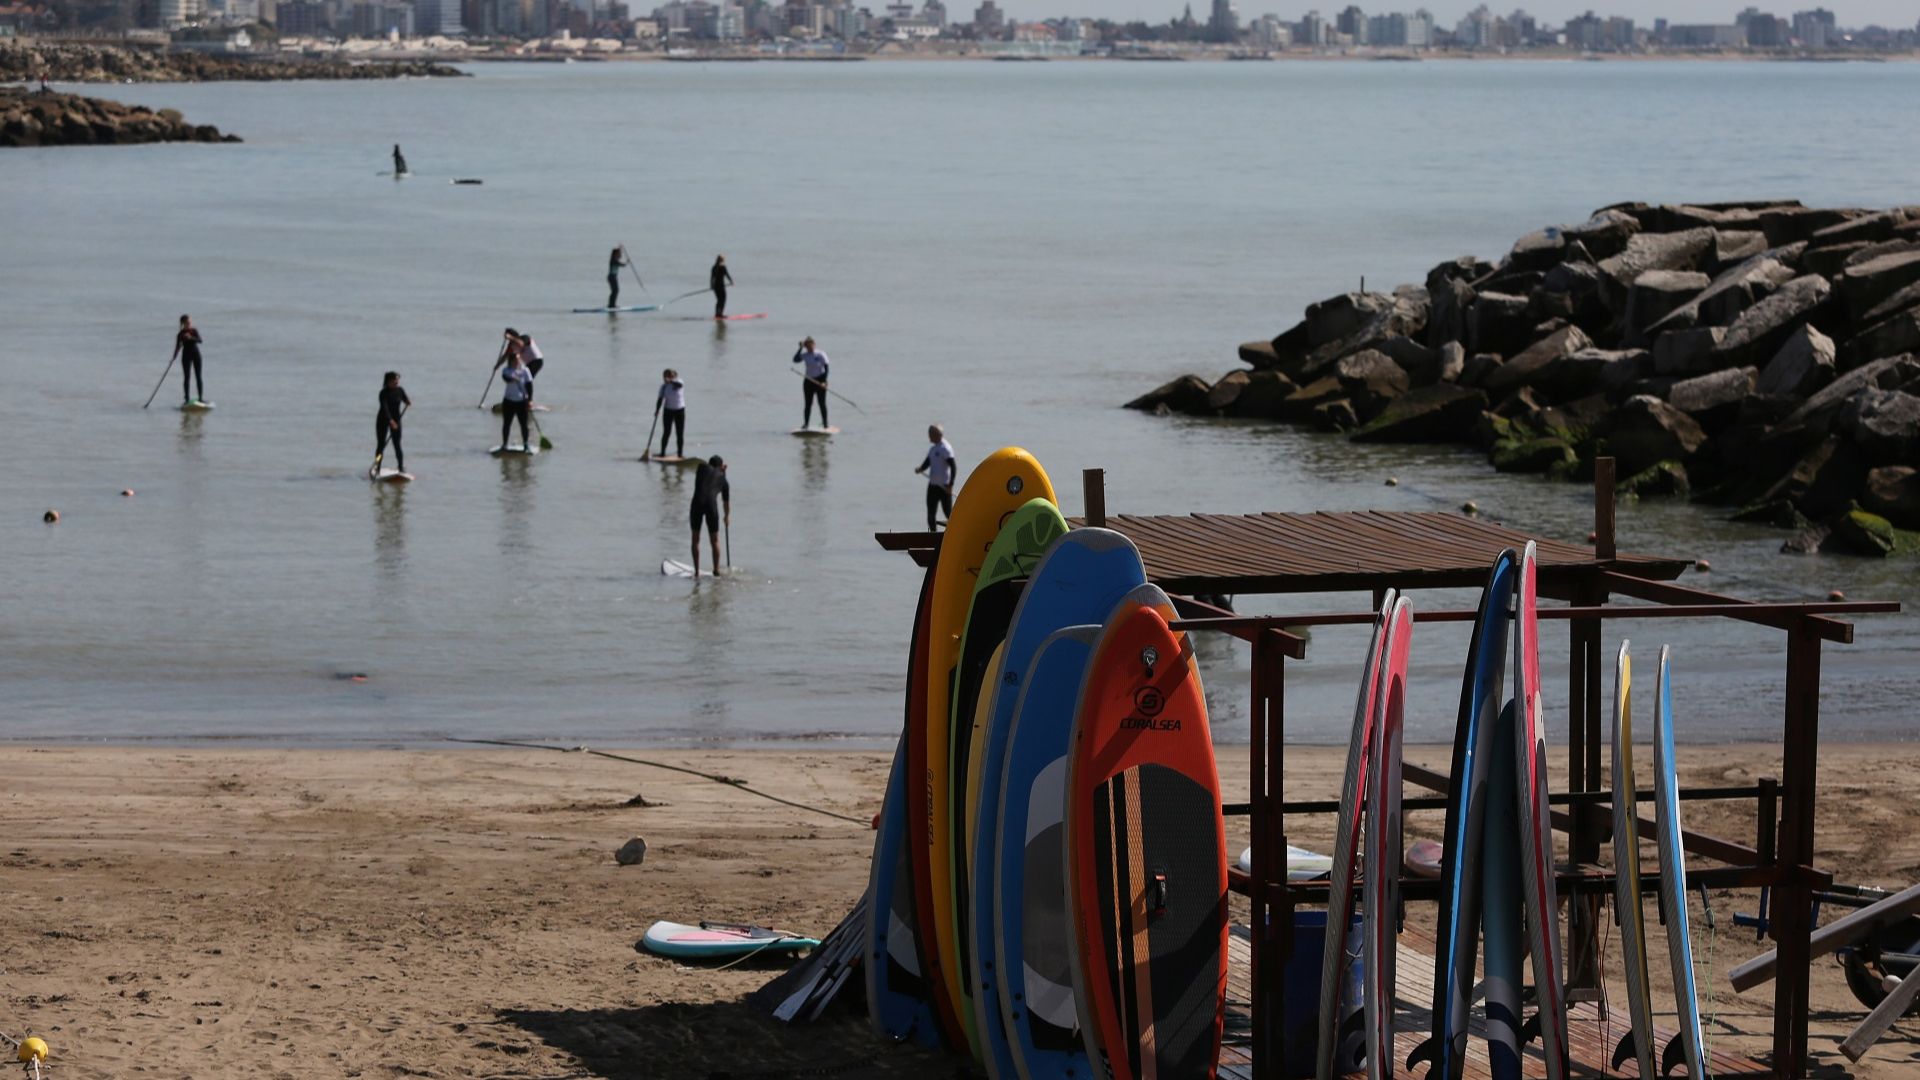 En las escuelas de surf se pueden alquilar tablas y trajes en cualquier momento del año (Crédito: Prensa EMTUR)